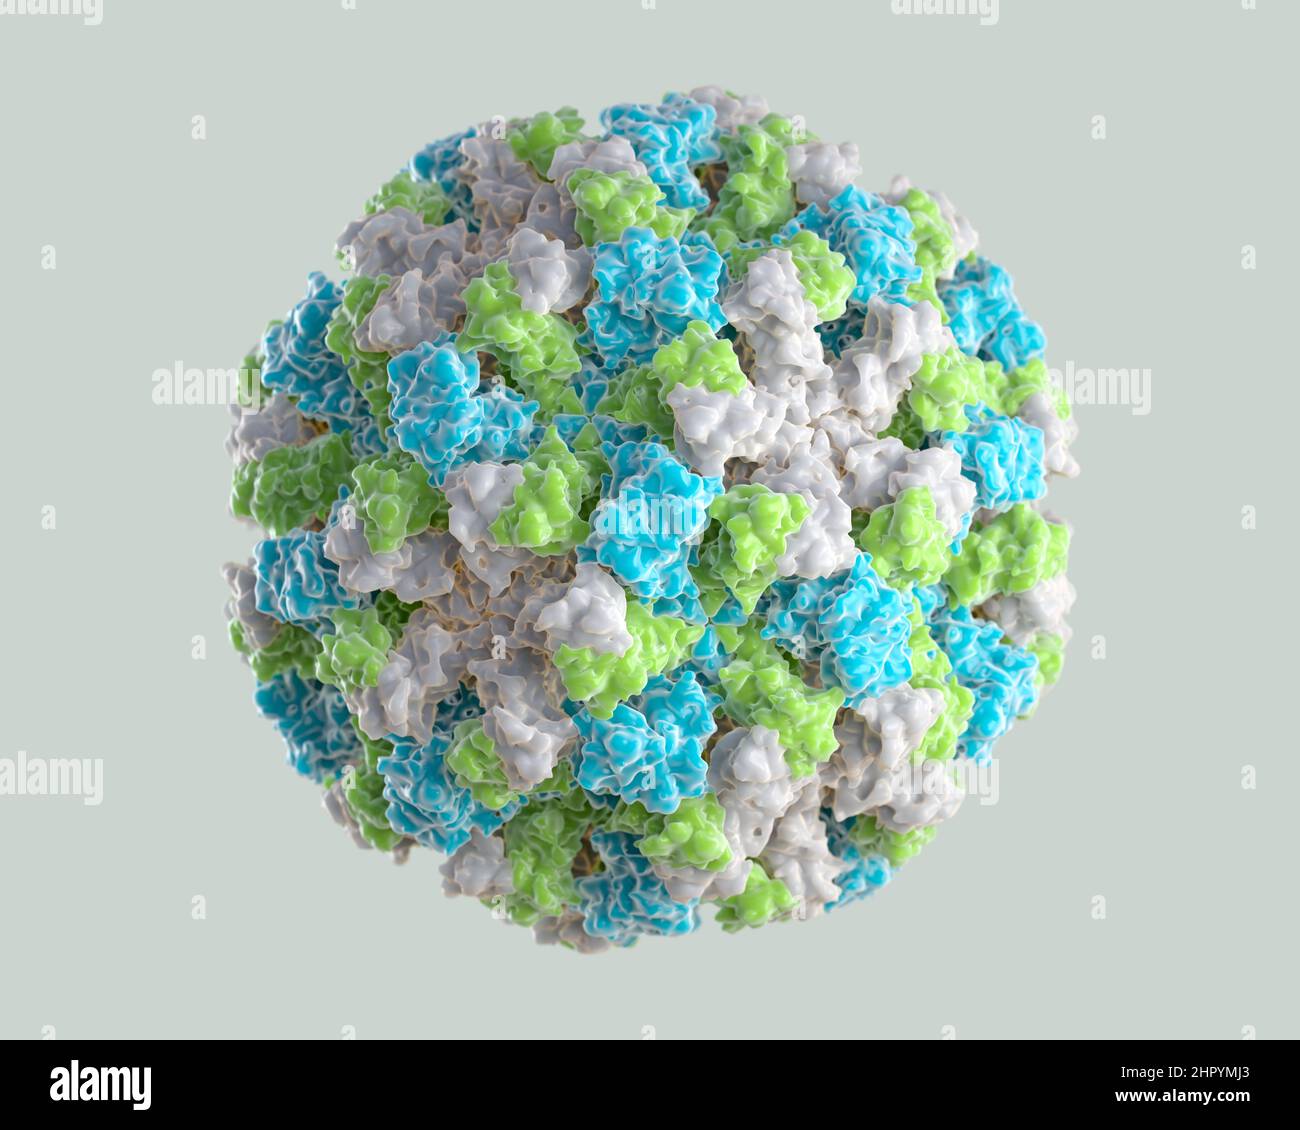 3D représentation graphique d'un seul virion norovirus. Les différentes couleurs représentent différentes régions de la coque protéique externe de l'organisme, ou c Banque D'Images